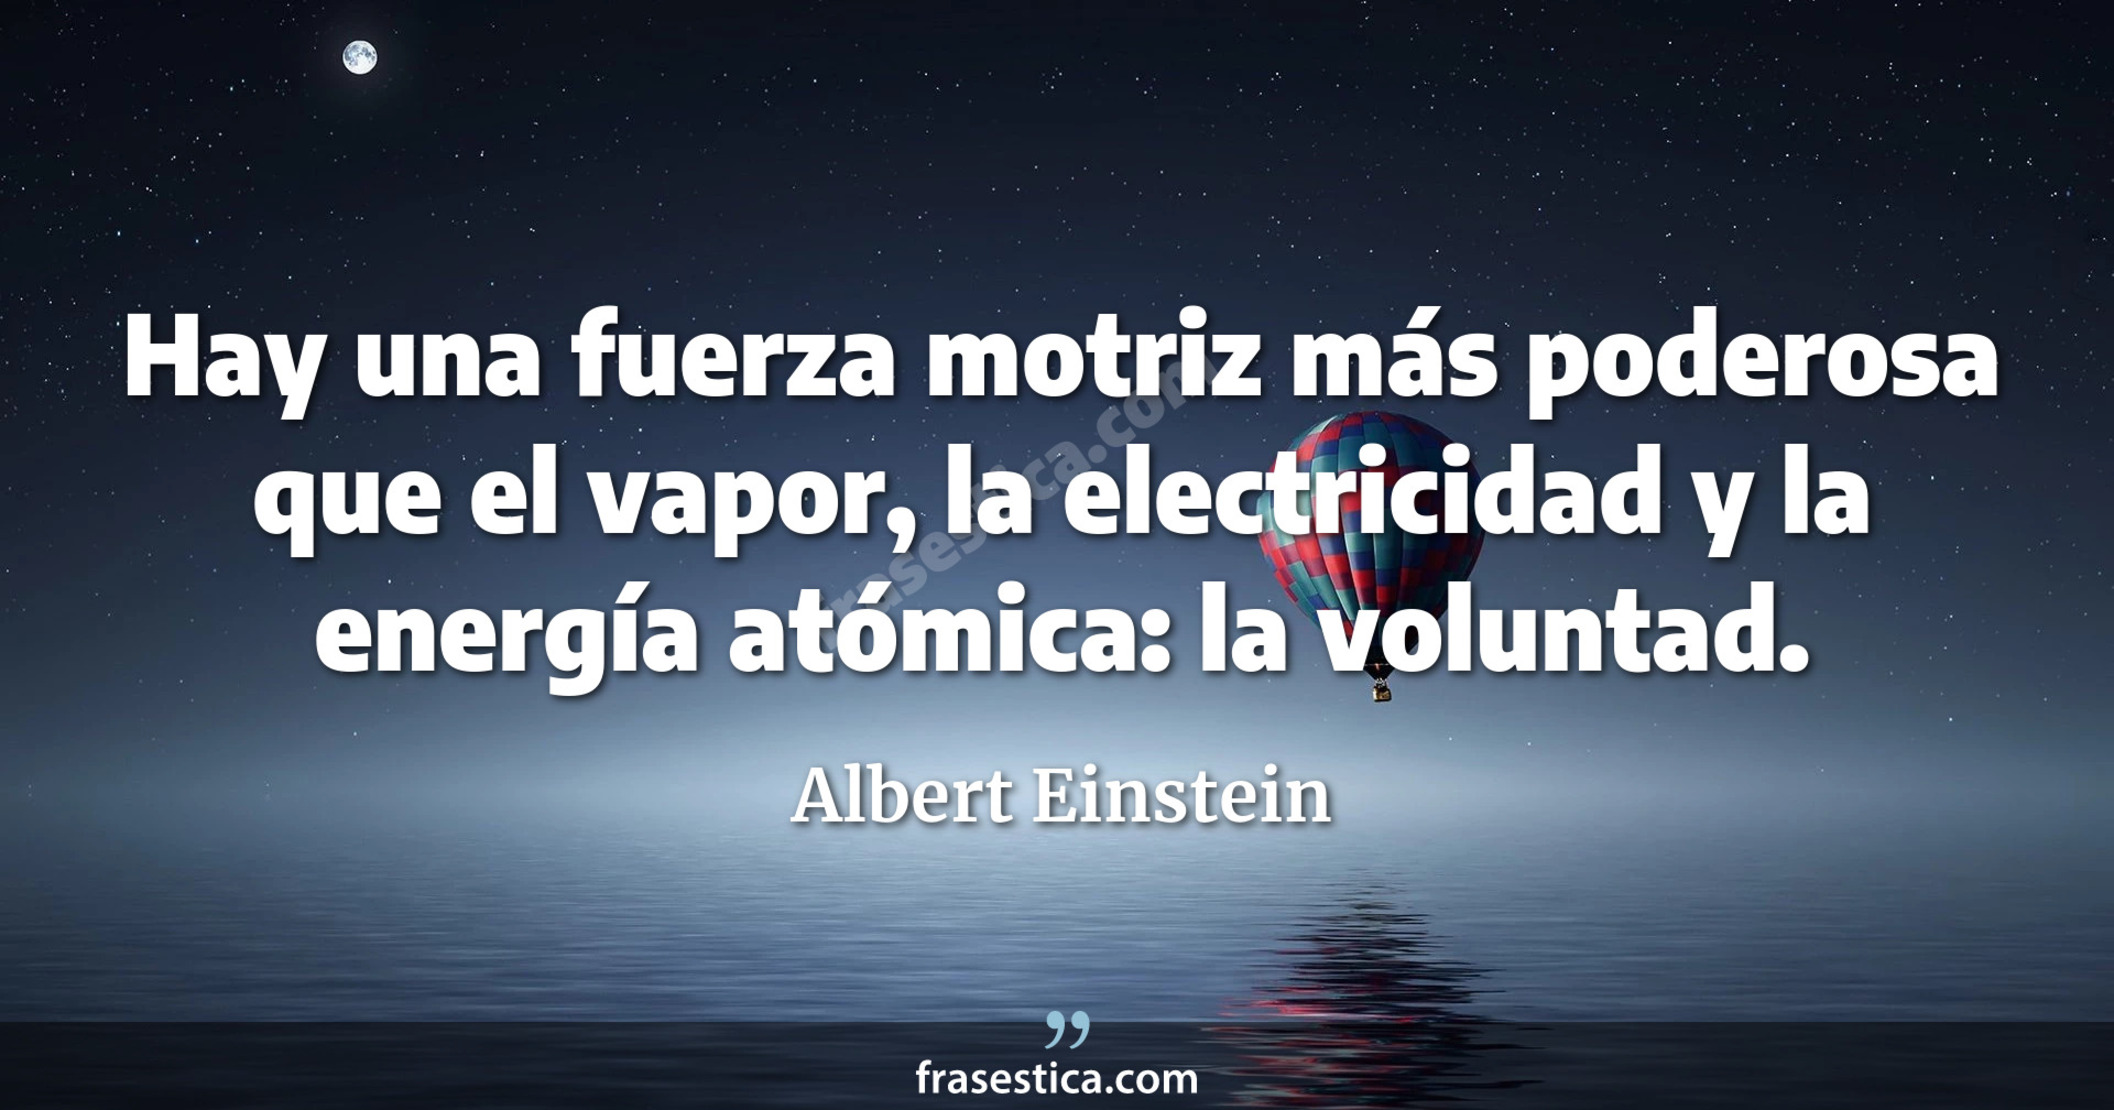 Hay una fuerza motriz más poderosa que el vapor, la electricidad y la energía atómica: la voluntad. - Albert Einstein